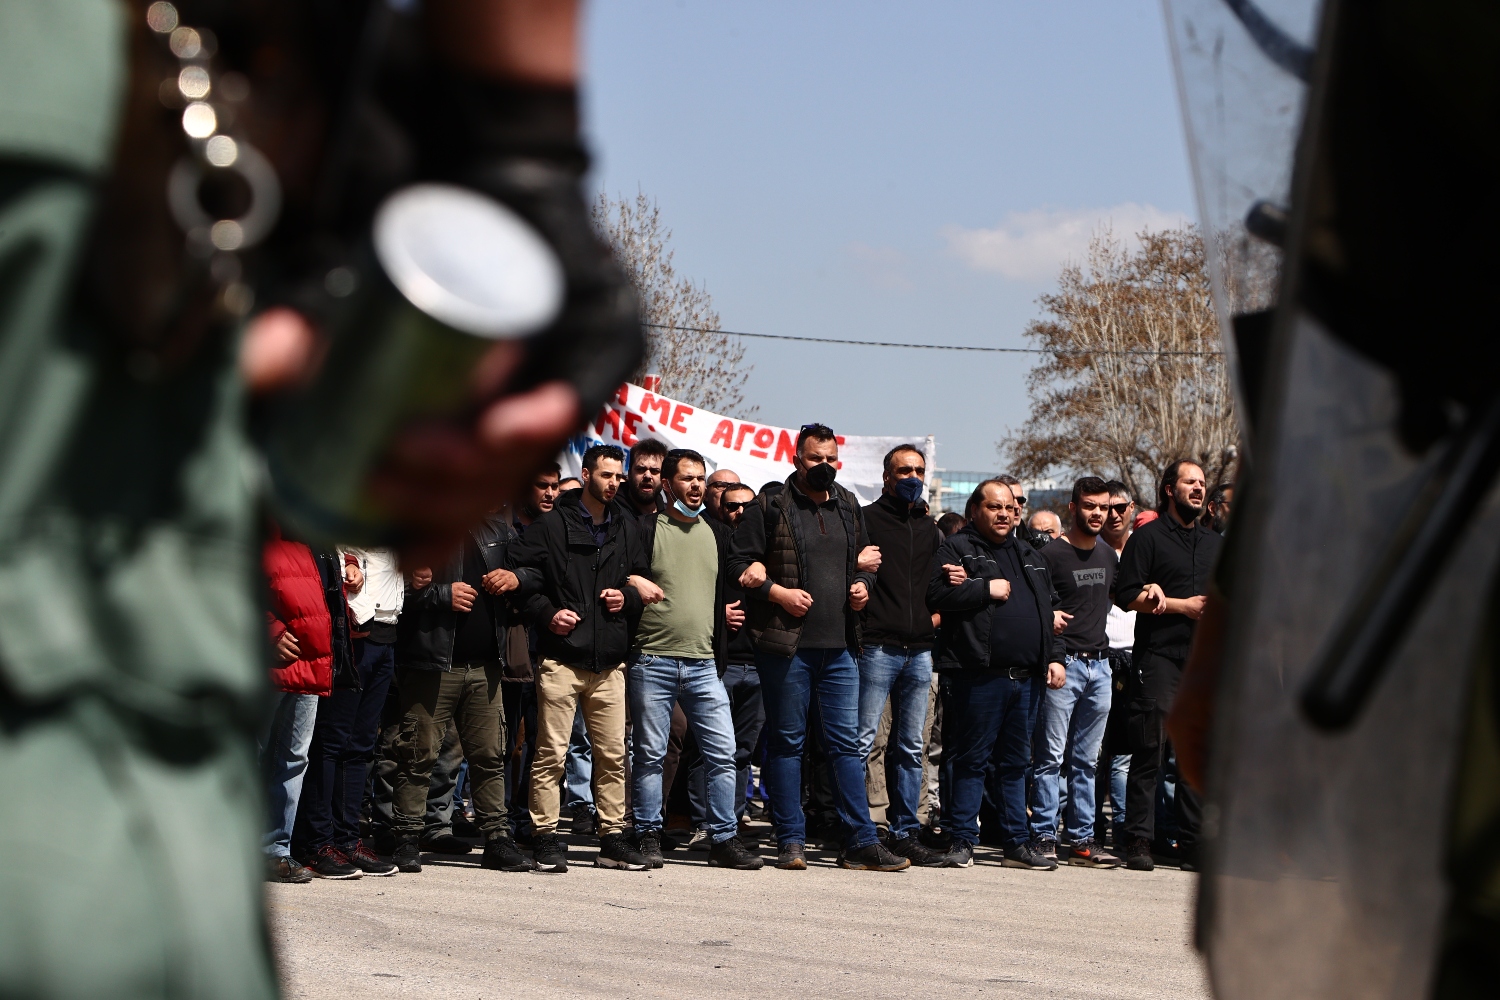 Έκθετη η κυβέρνηση: Αποκαλυπτικά στοιχεία της αστυνομικής βαρβαρότητας κατά διαδηλωτών στη Θεσσαλονίκη